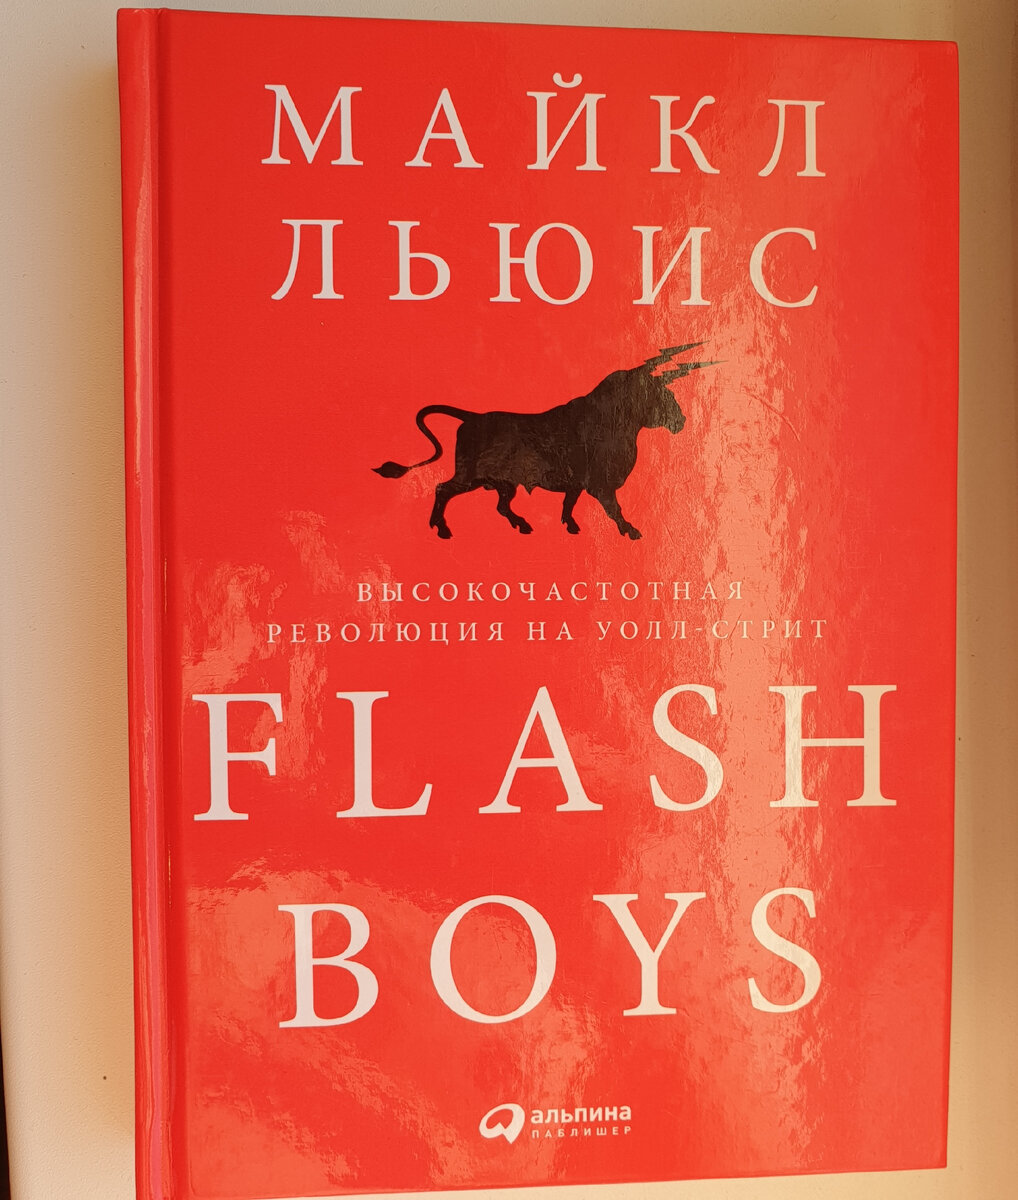 Flash Boys. Высокочастотная революция на Уолл-стрит» — Майкл Льюис